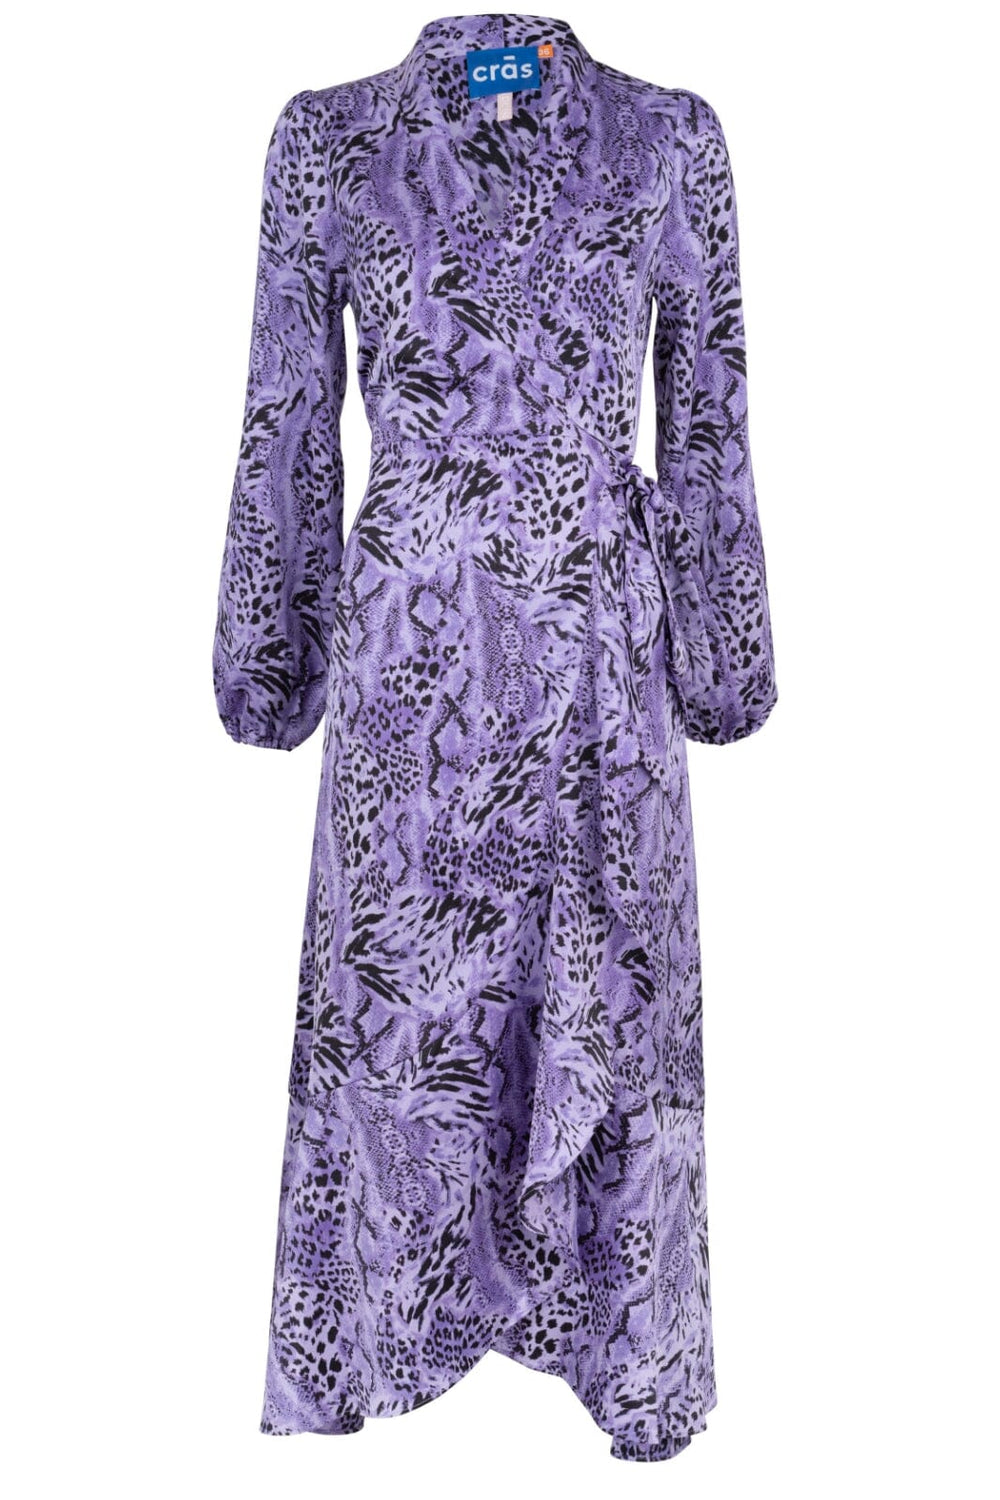 Cras - Laracras Dress - 8005 Wild Lavender Kjoler 